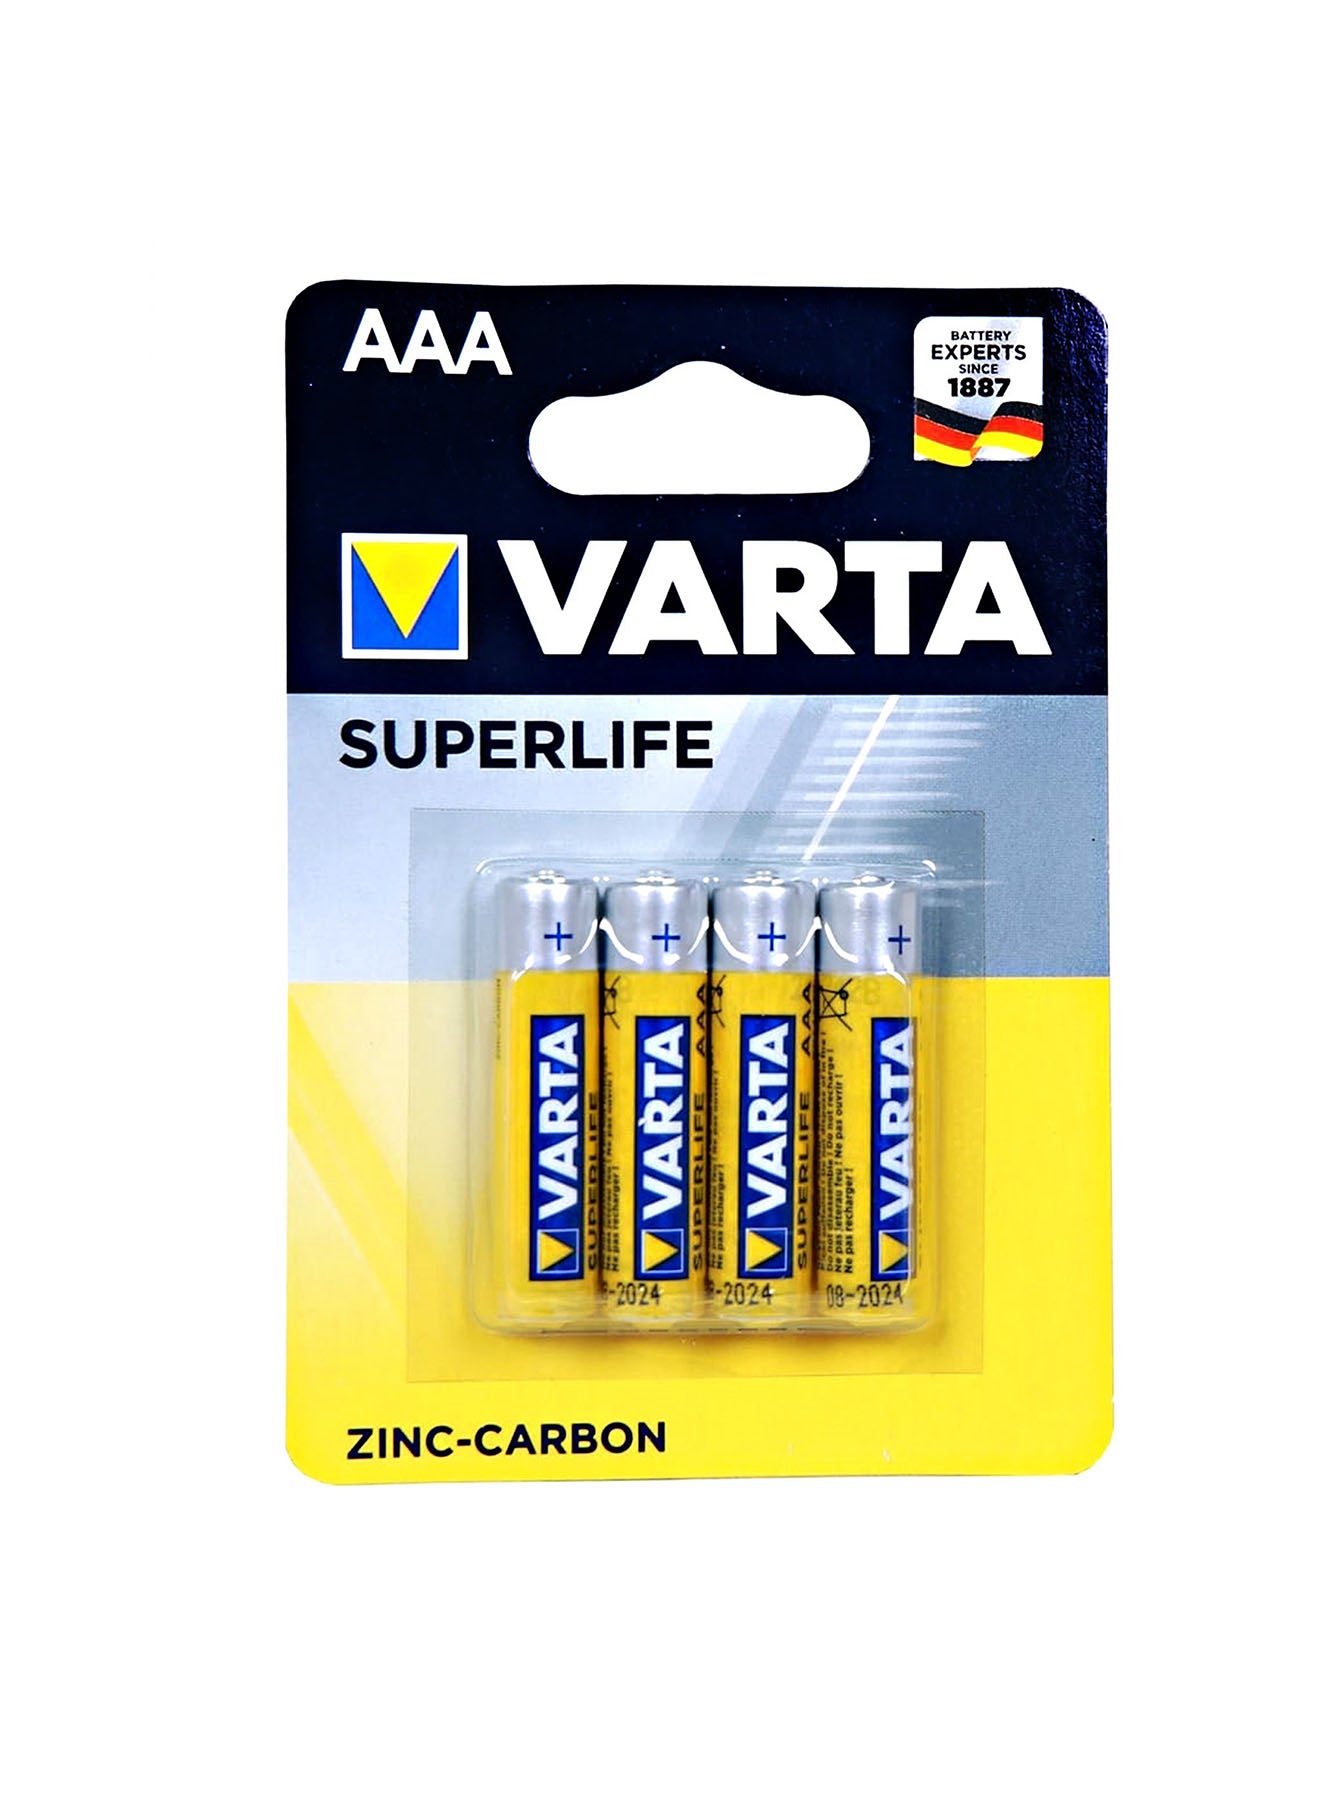 Varta Superlife AAA Battery 4 Units